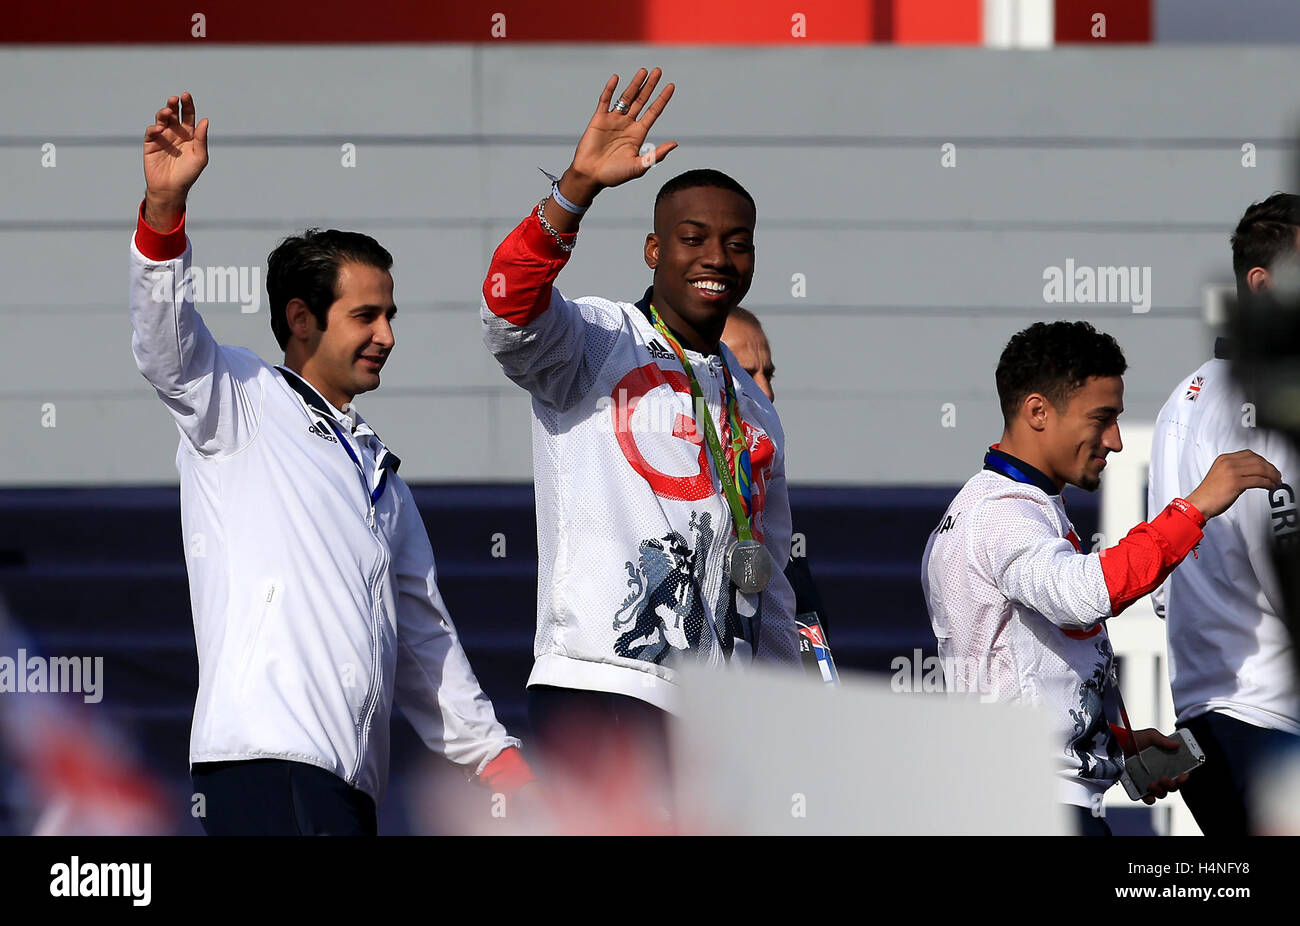 Großbritanniens Lutalo Muhammad (Mitte) während der Olympischen und Paralympischen Athleten Helden zurück in London. Stockfoto